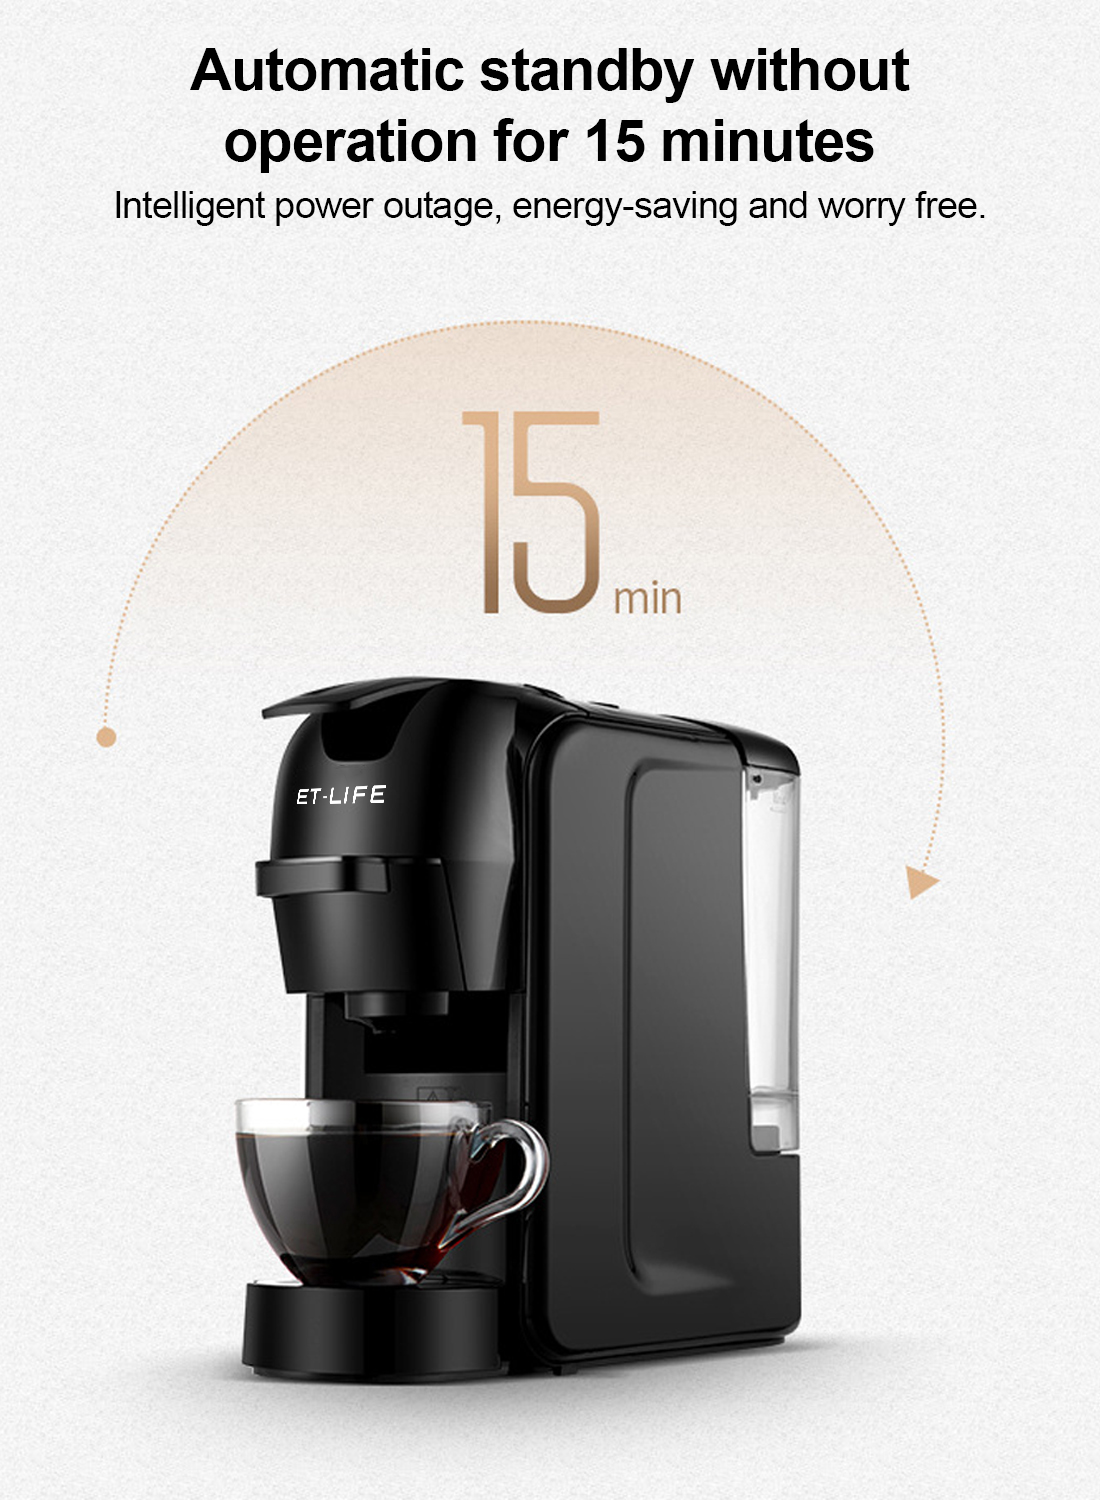 19Bar 3-in-1 Capsule Espresso Coffee Maker for Nespresso/Dolce Gusto/Coffee Powder 600ml 1450W ST-511 Black